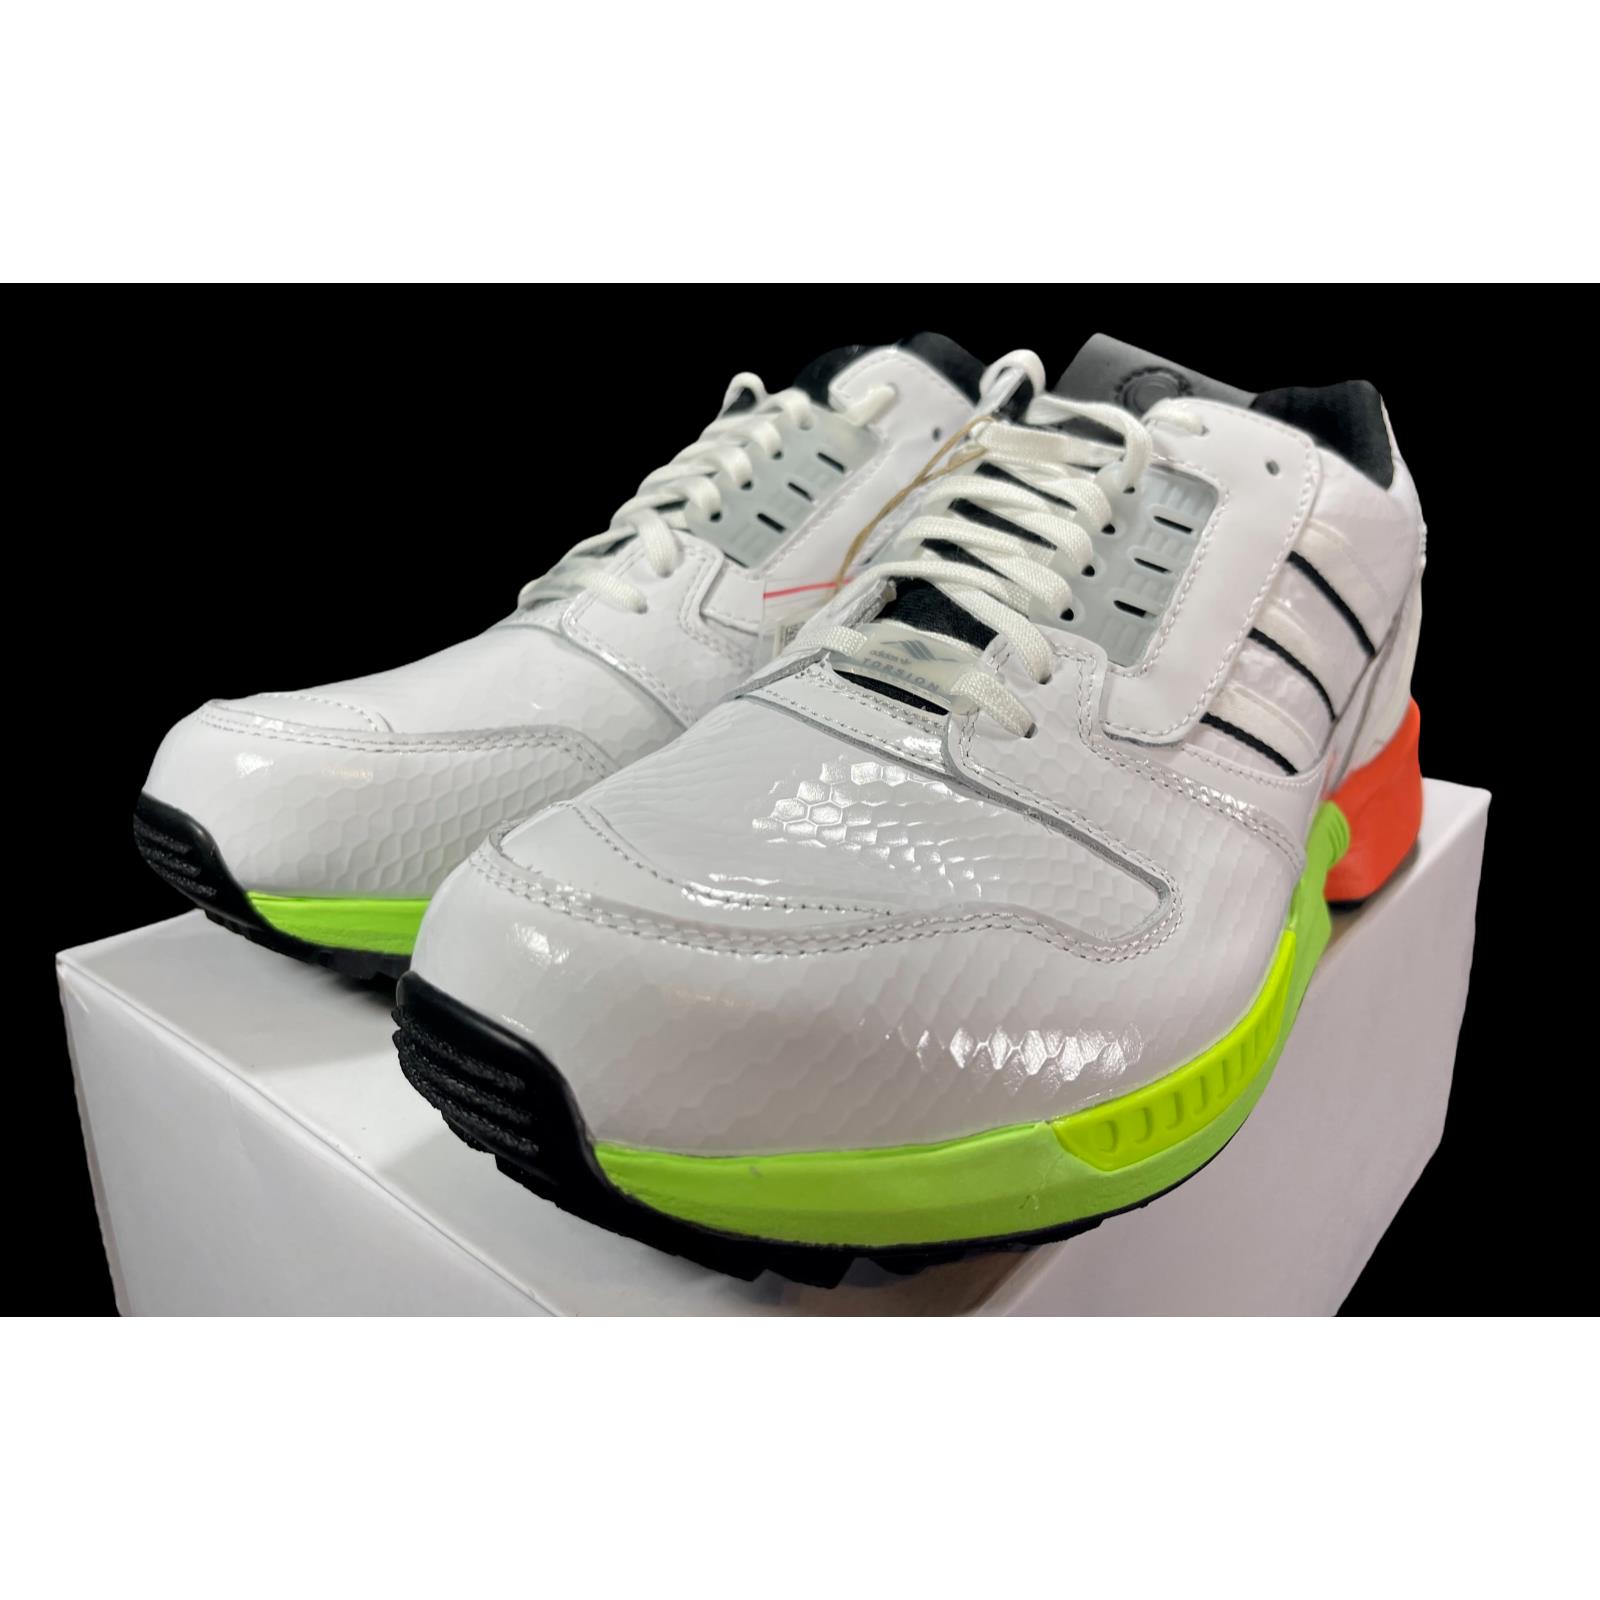 Adidas Originals A-zx Series ZX 8000 SG Golf Shoes Sneaker FZ4412 